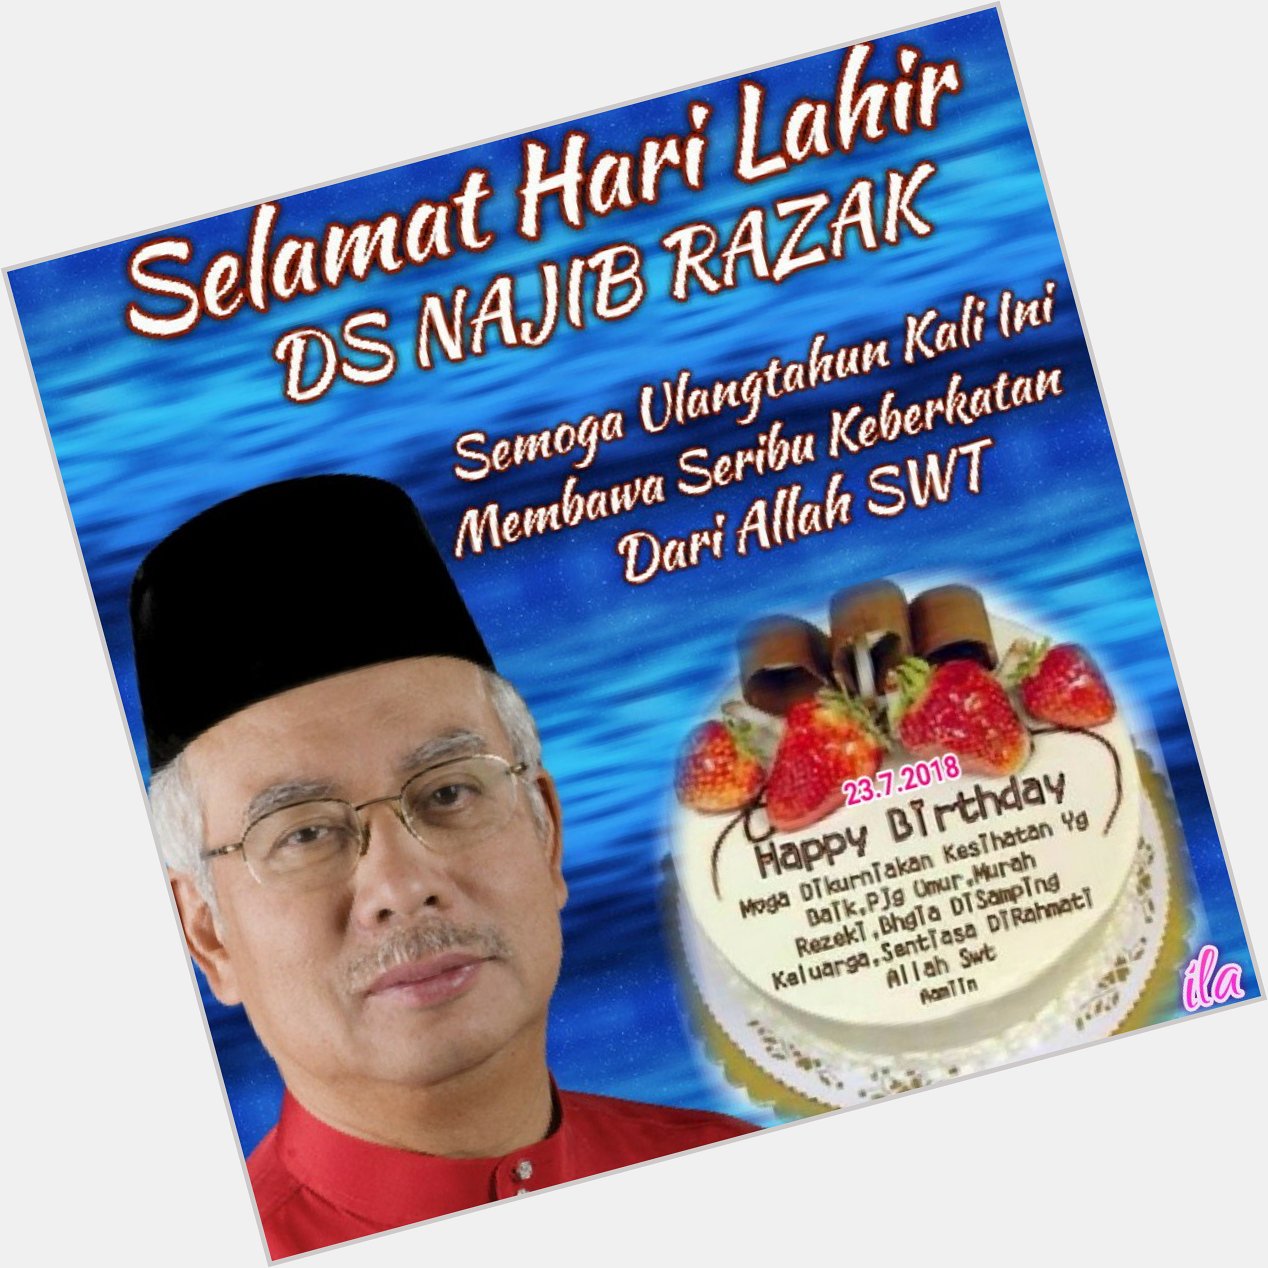 Happy birthday Dato Seri Najib Razak, semoga panjang umur dan dikurniakan kesihatan yang baik 